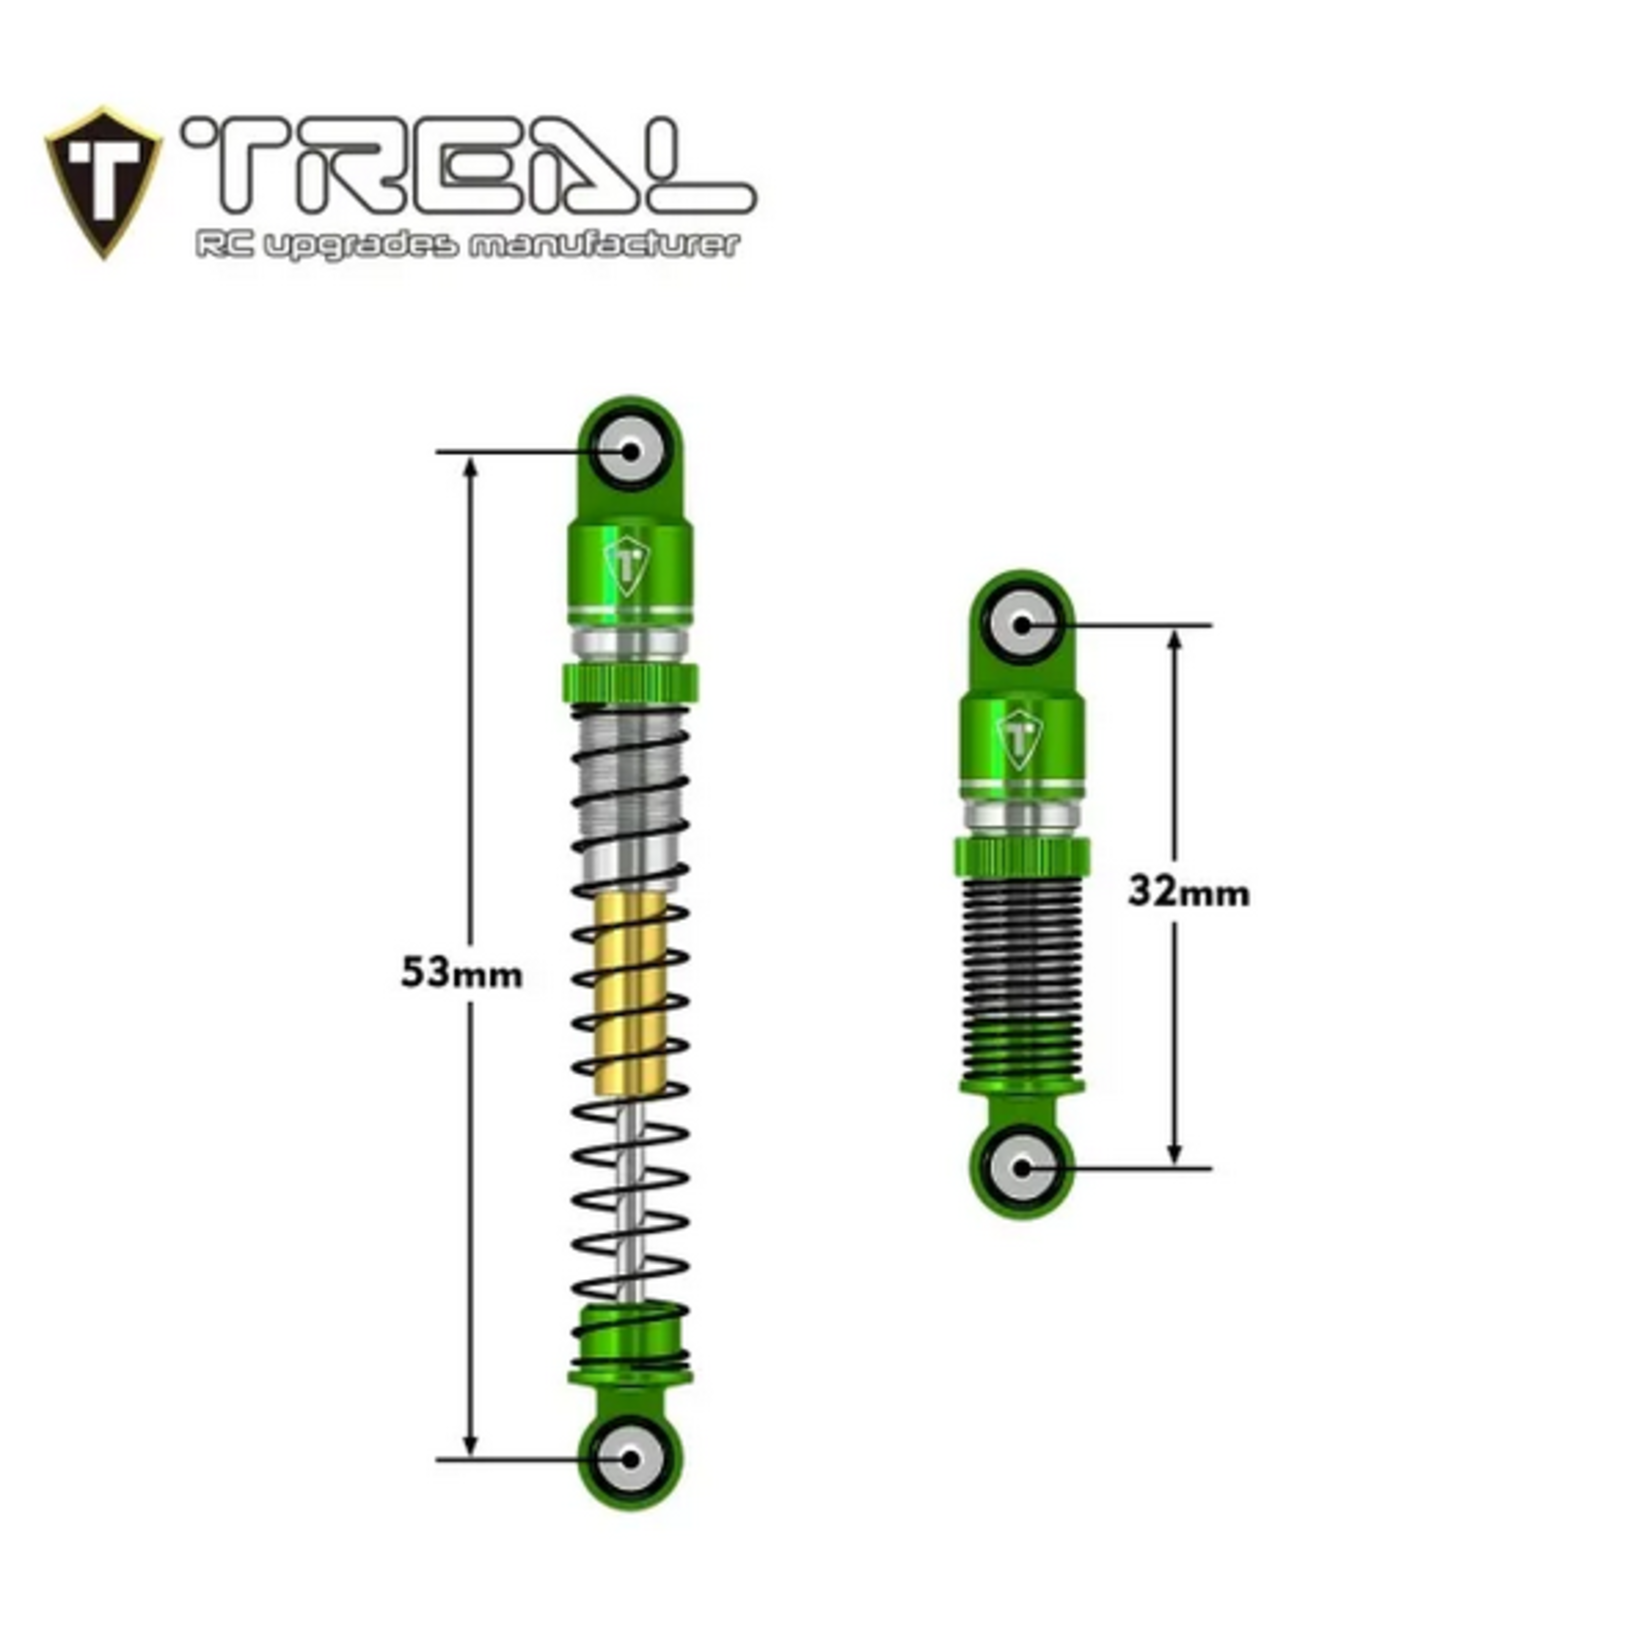 Treal TREAL AX24 Aluminum Threaded Shocks (53mm) (Green) #X003SX4LMZ